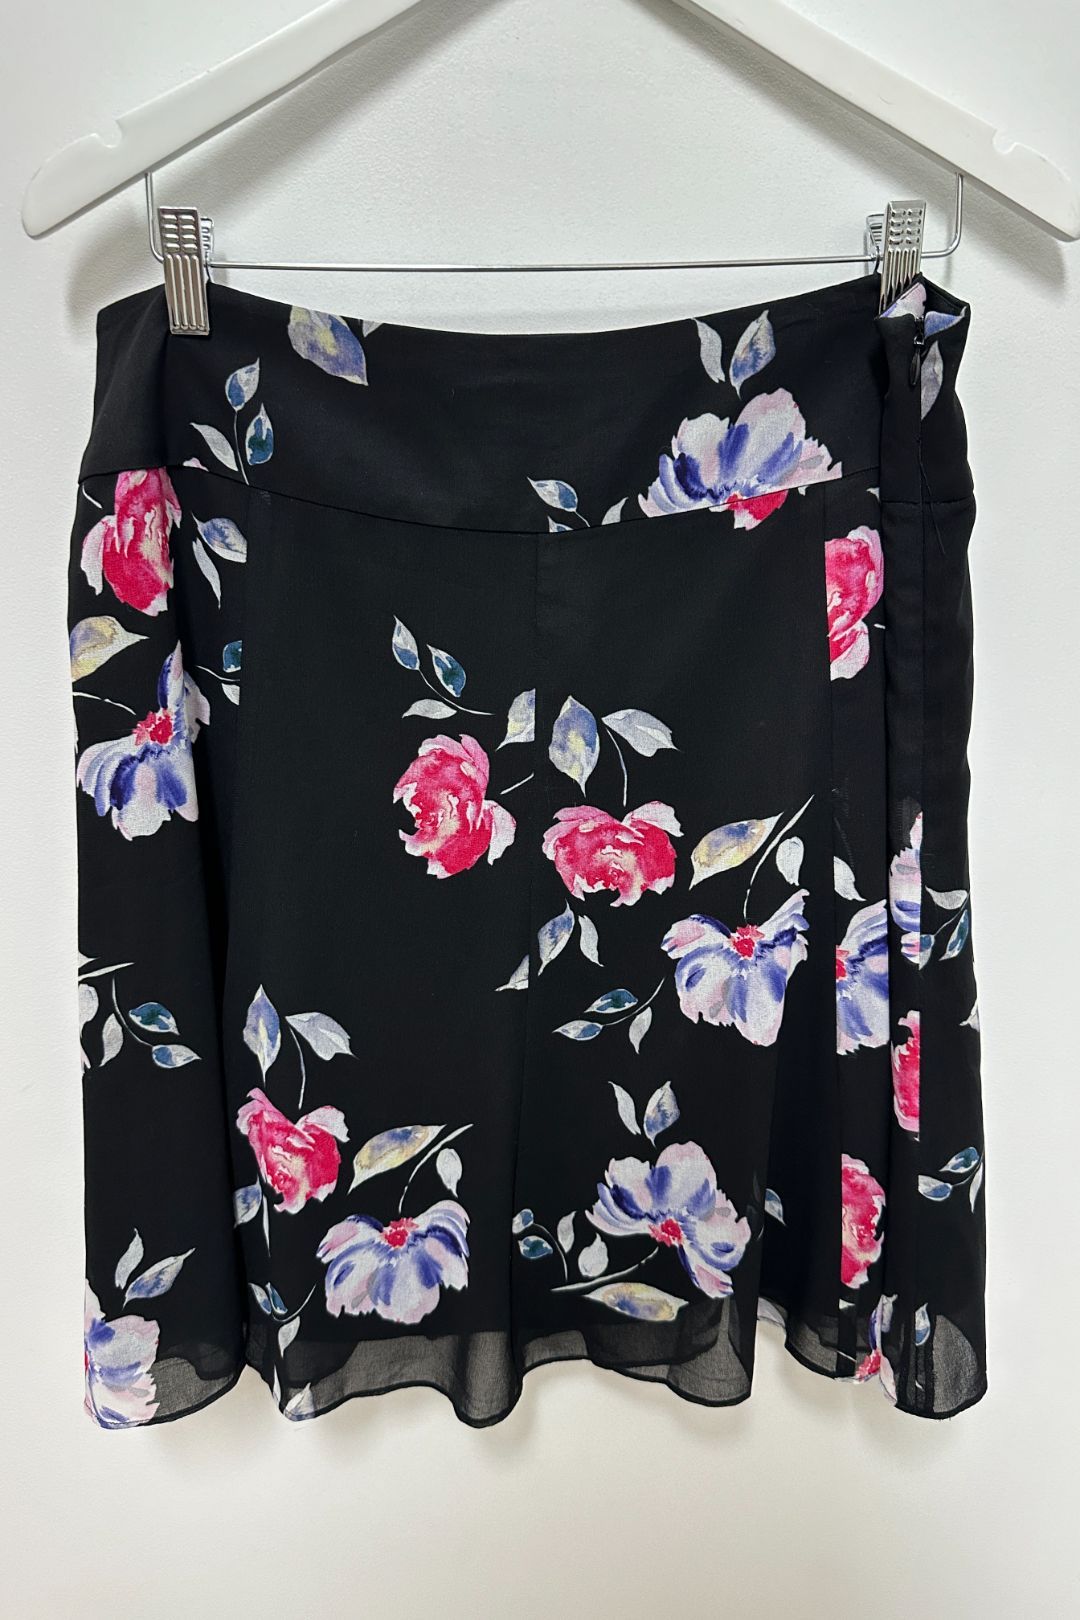 Review Floral She's Lovely Skirt in Black & Multi